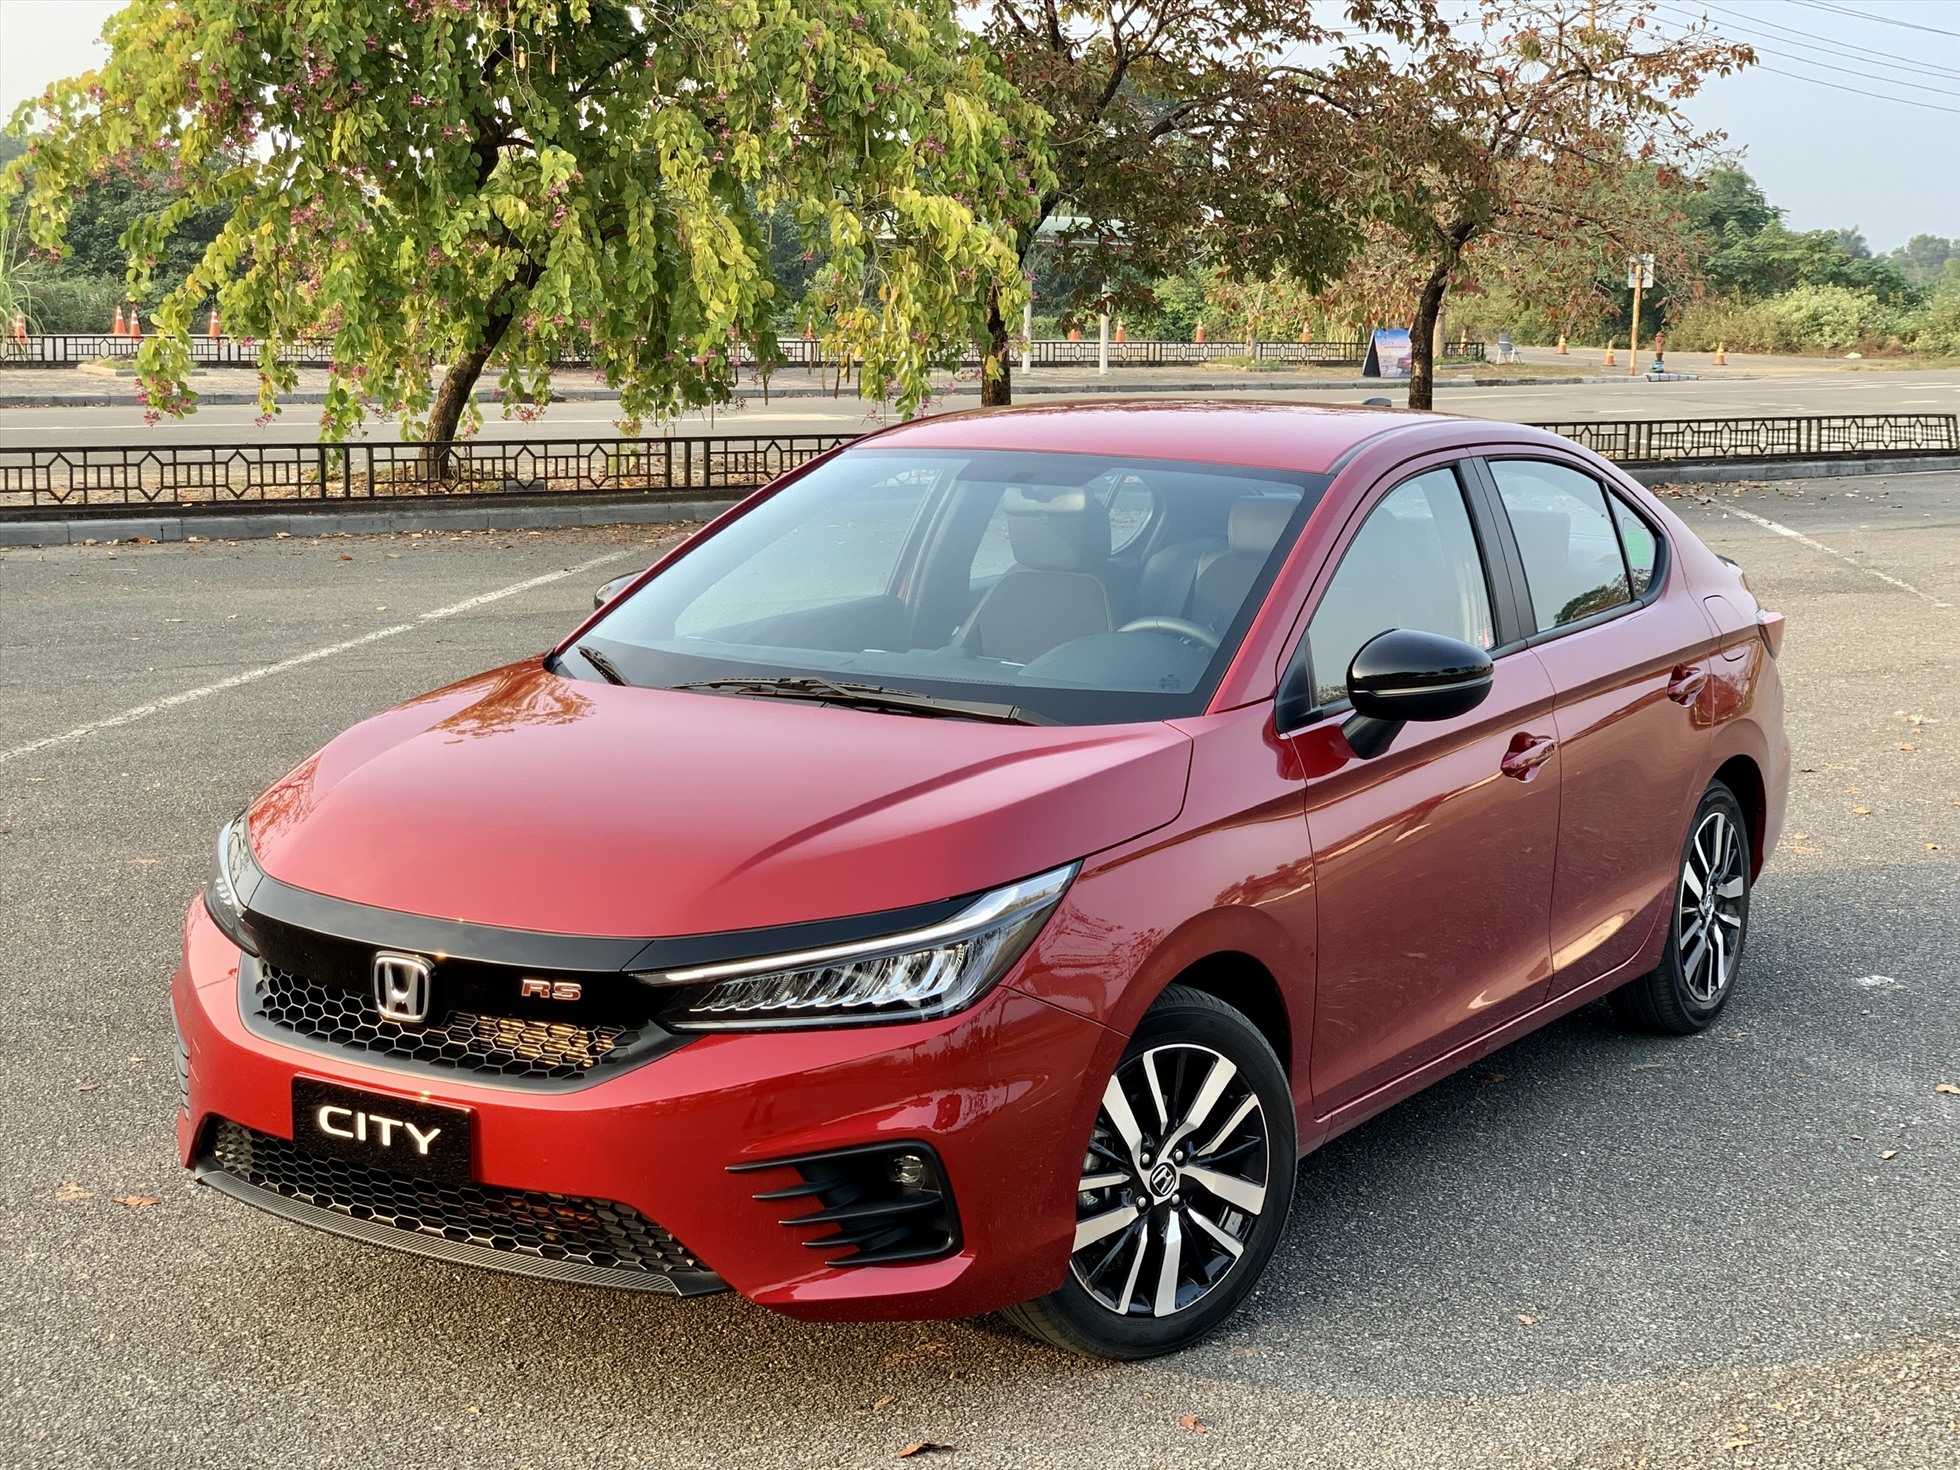 Mẫu xe chủ lực về doanh số của hãng Honda liên tục chạy chương trình ưu đãi. Ảnh: Khánh Linh.